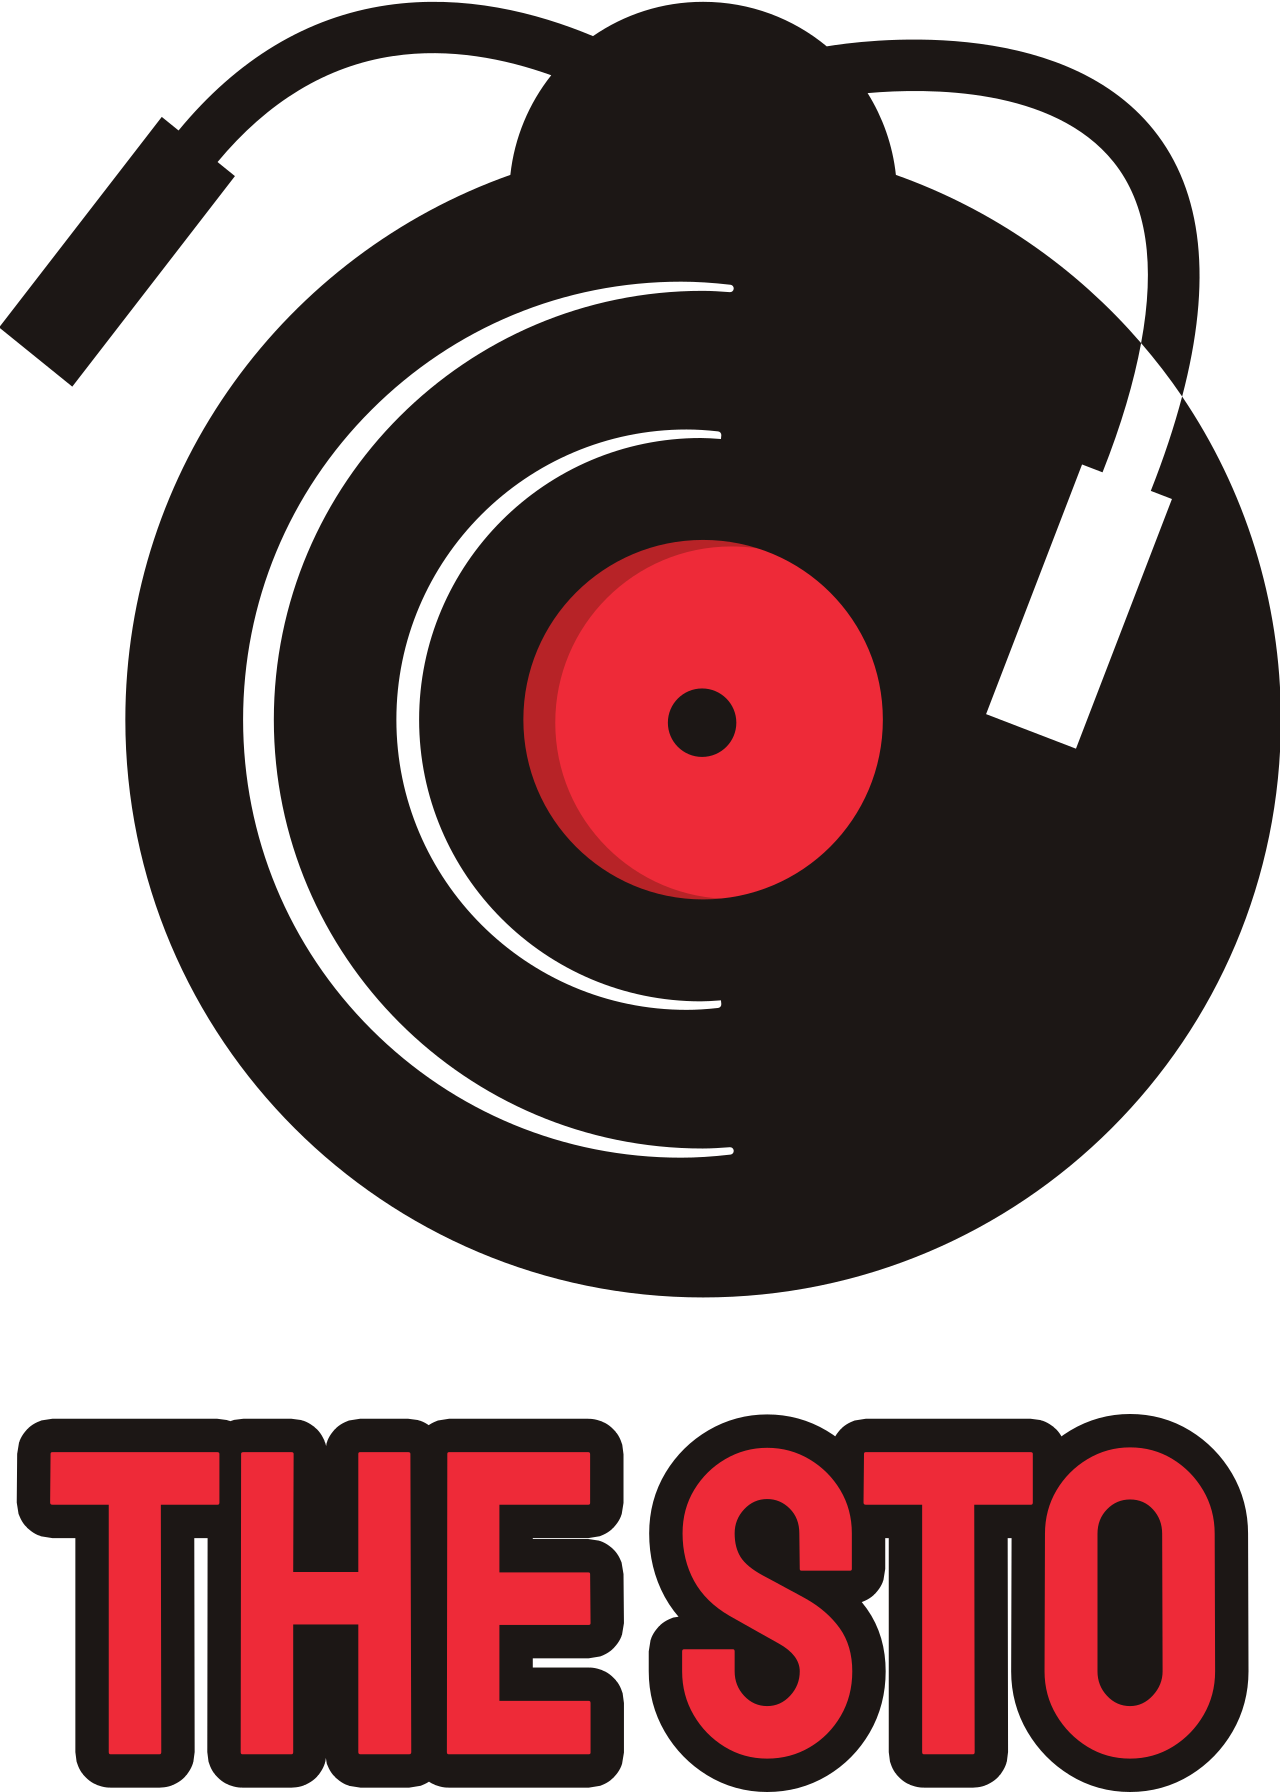 The Sto's logo